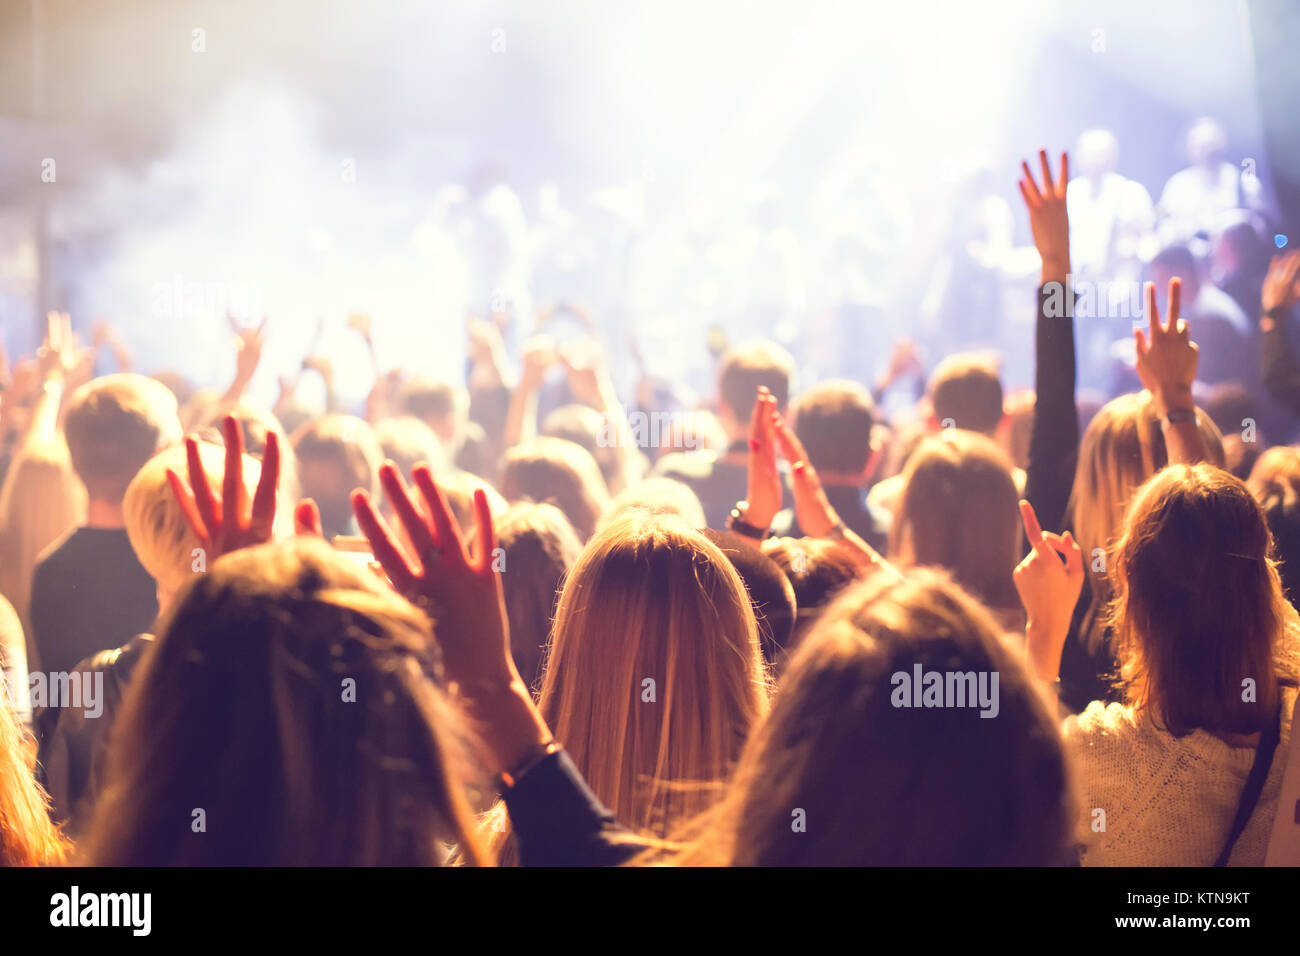 Eine Masse von Zuschauern bei einem Konzert in einem kleinen Konzert Club. Klatschen und Tanzen in der Nähe der Bühne. Das Publikum ist mit Licht gefüllt. Stockfoto